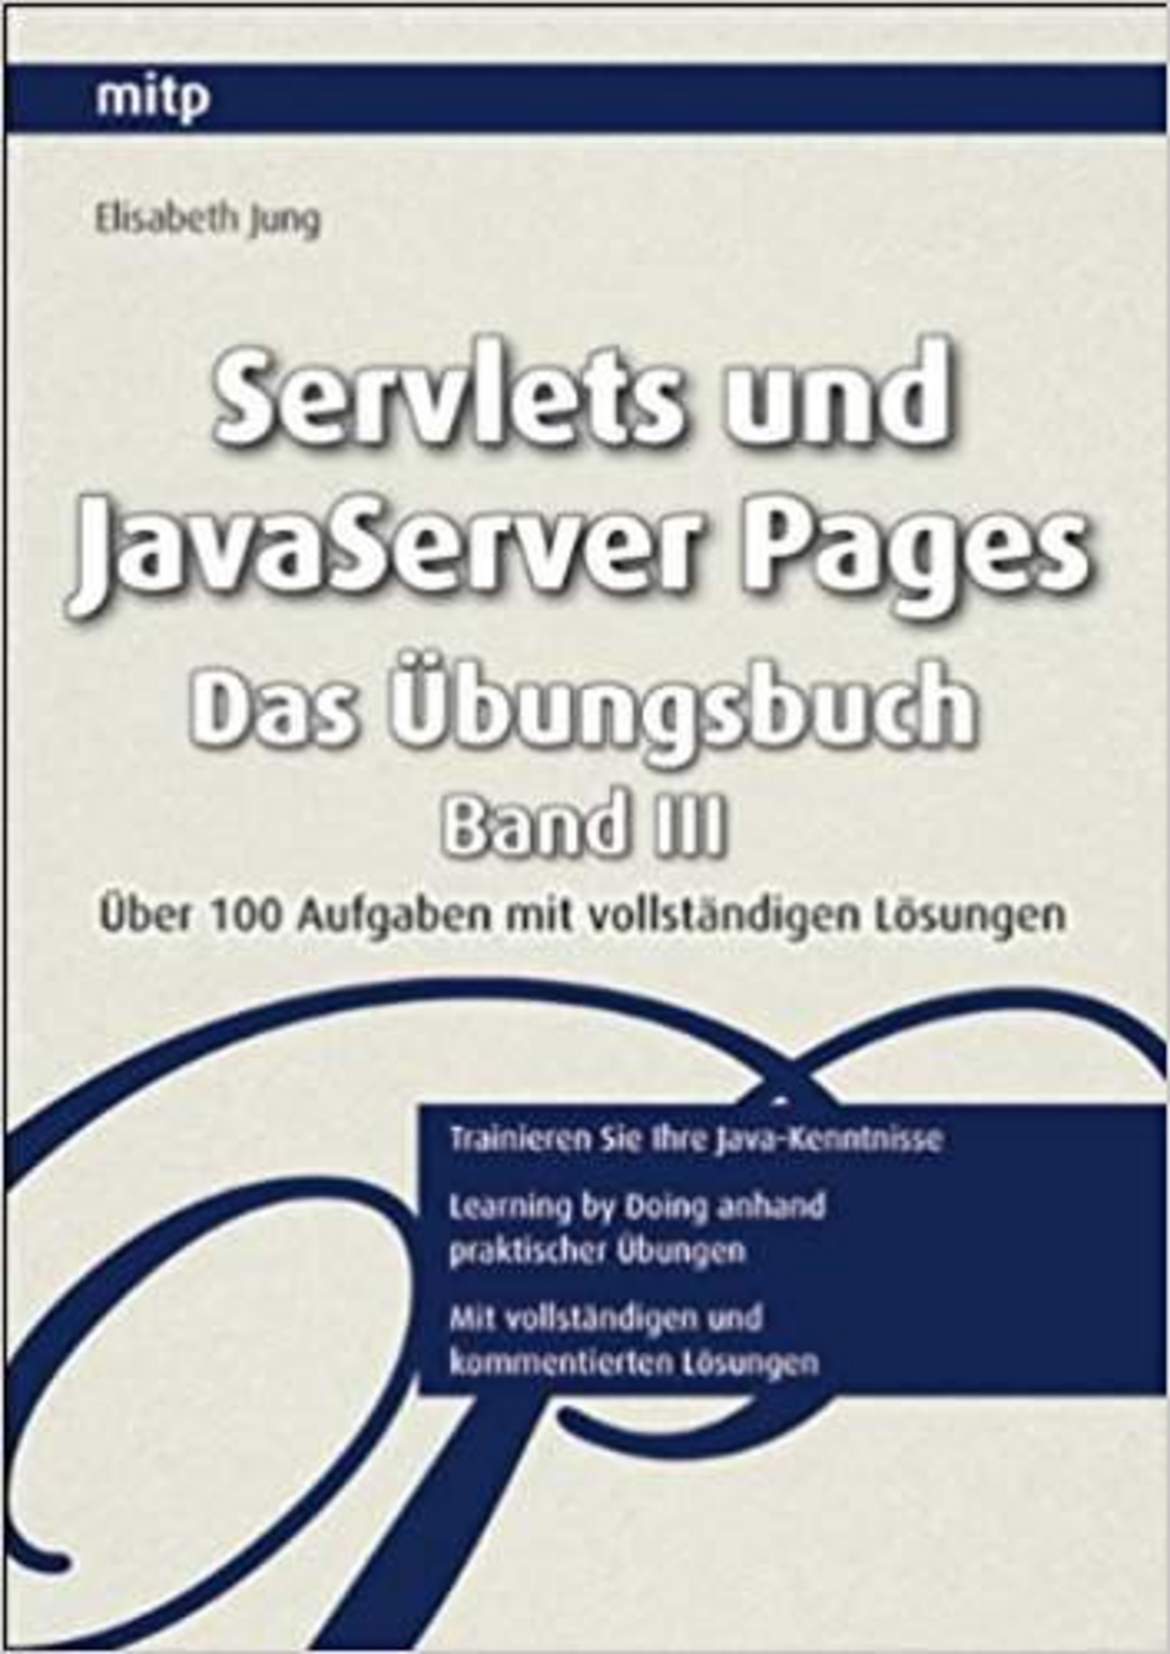 Servlets und JavaServer Pages. Das Übungsbuch - Band III